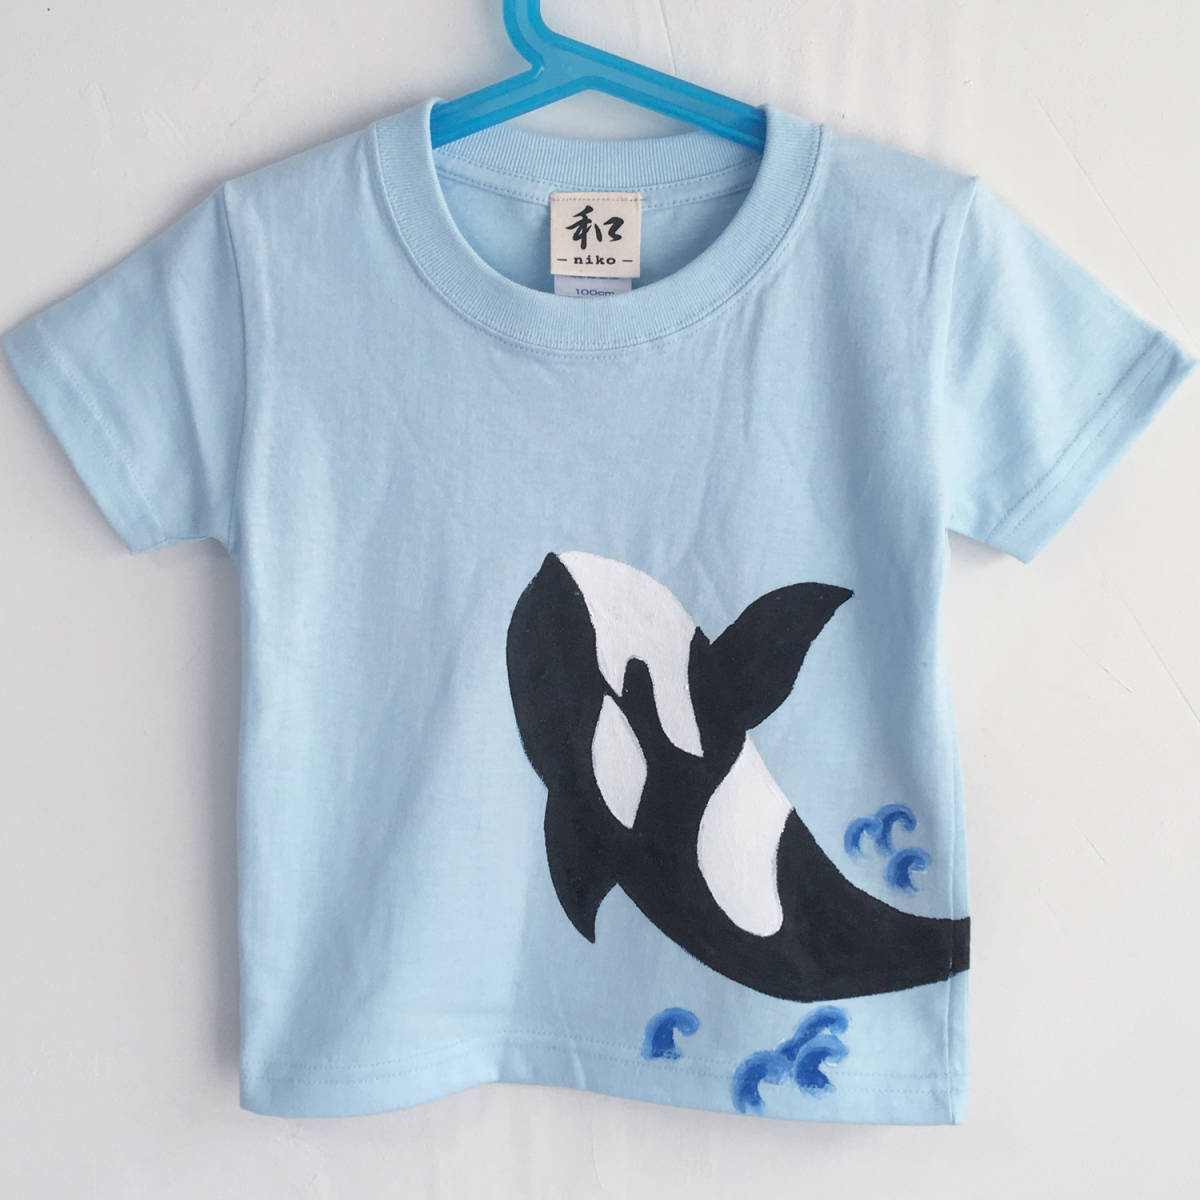 Kids T-shirt Size 150 Blue Killer Whale T-shirt Hand-painted Killer Whale T-shirt Short Sleeve Animal Children's Clothes Handmade, tops, short sleeve t-shirt, 150(145~154cm)